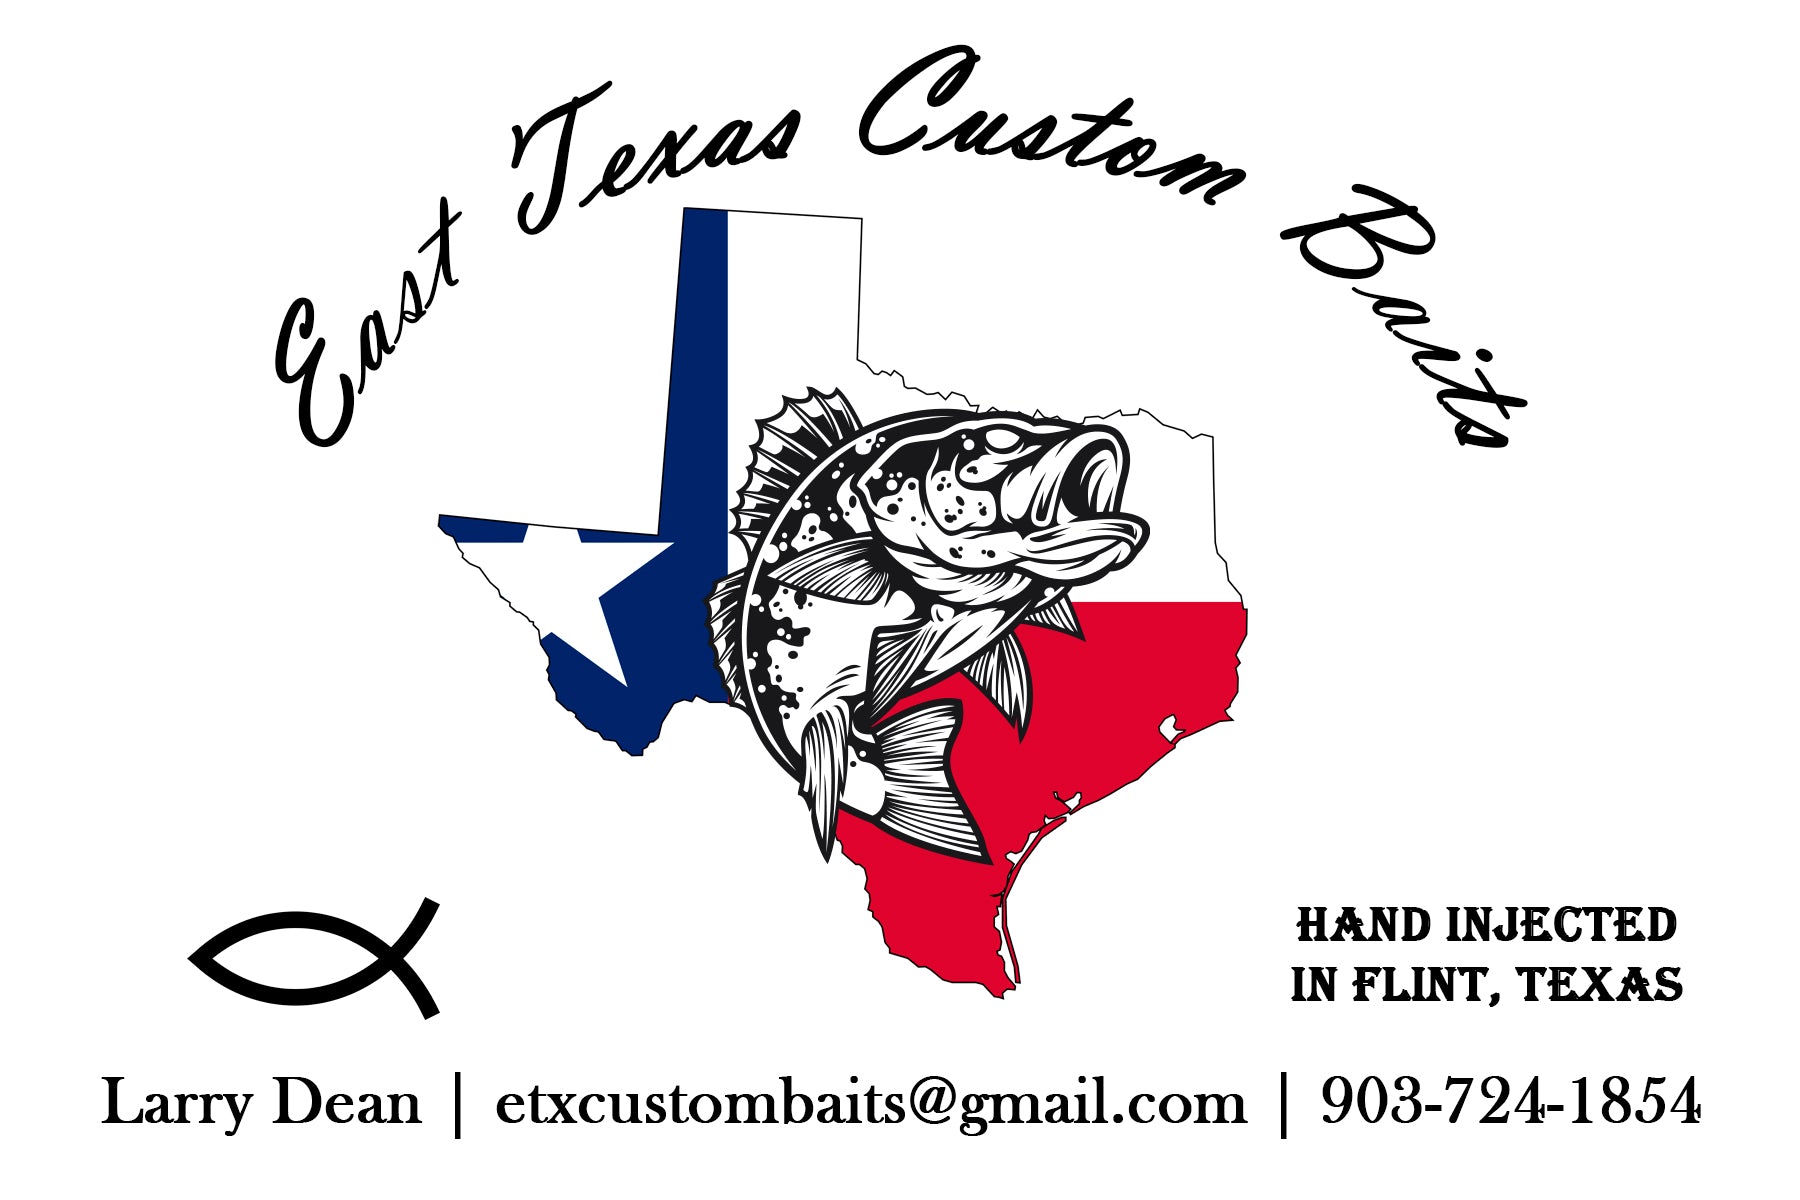 EAST TEXAS CUSTOM BAITS – East Texas Custom Baits